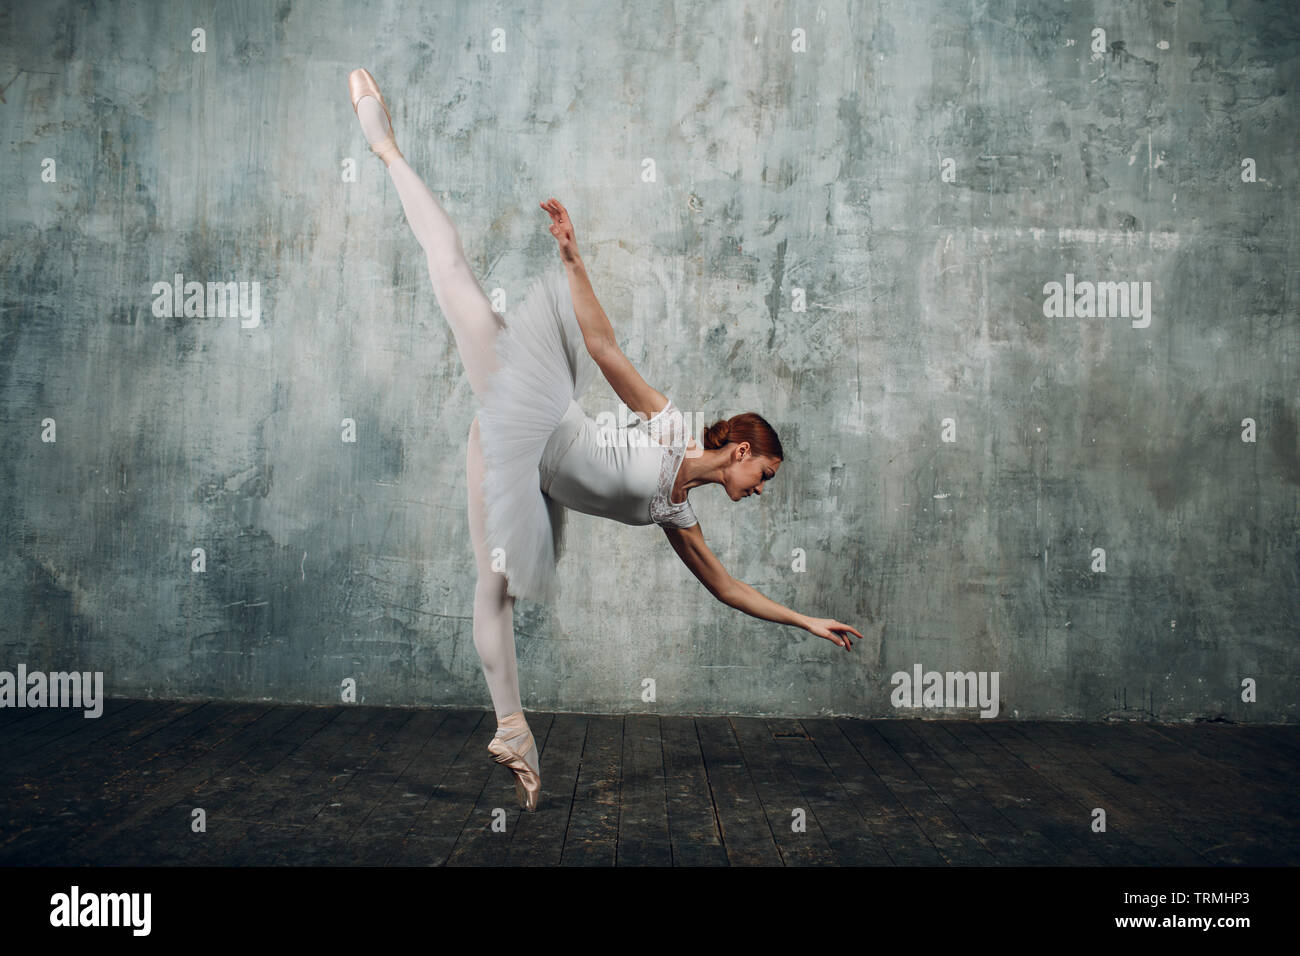 Ballerine dans la salle de bal. Belle jeune femme danseuse de ballet, habillés en tenue professionnelle, pointes et tutu blanc. Banque D'Images